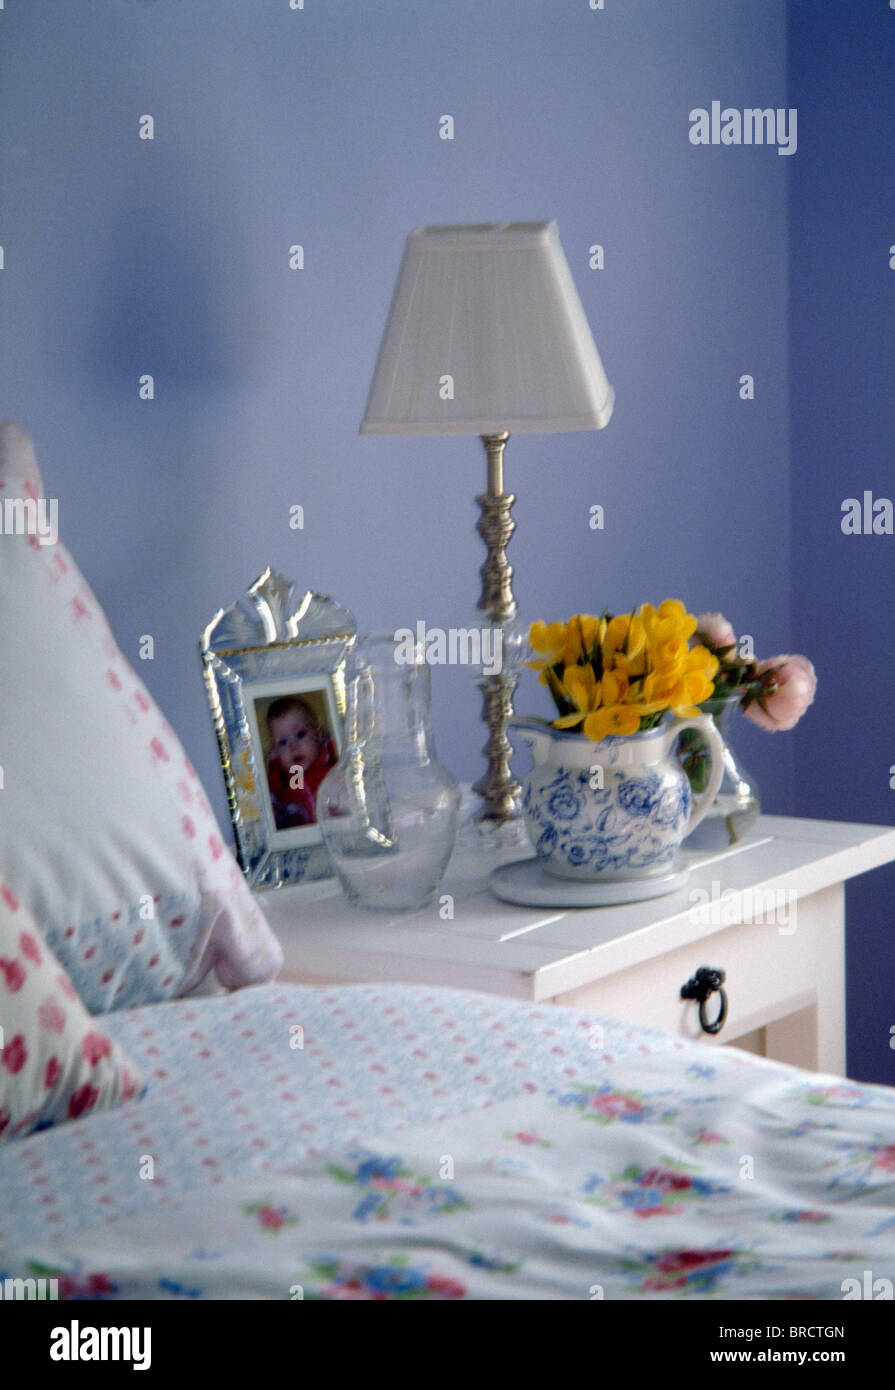 Lampada bianca e la brocca di fiori gialli sul comodino in paese blu camera da letto Foto Stock